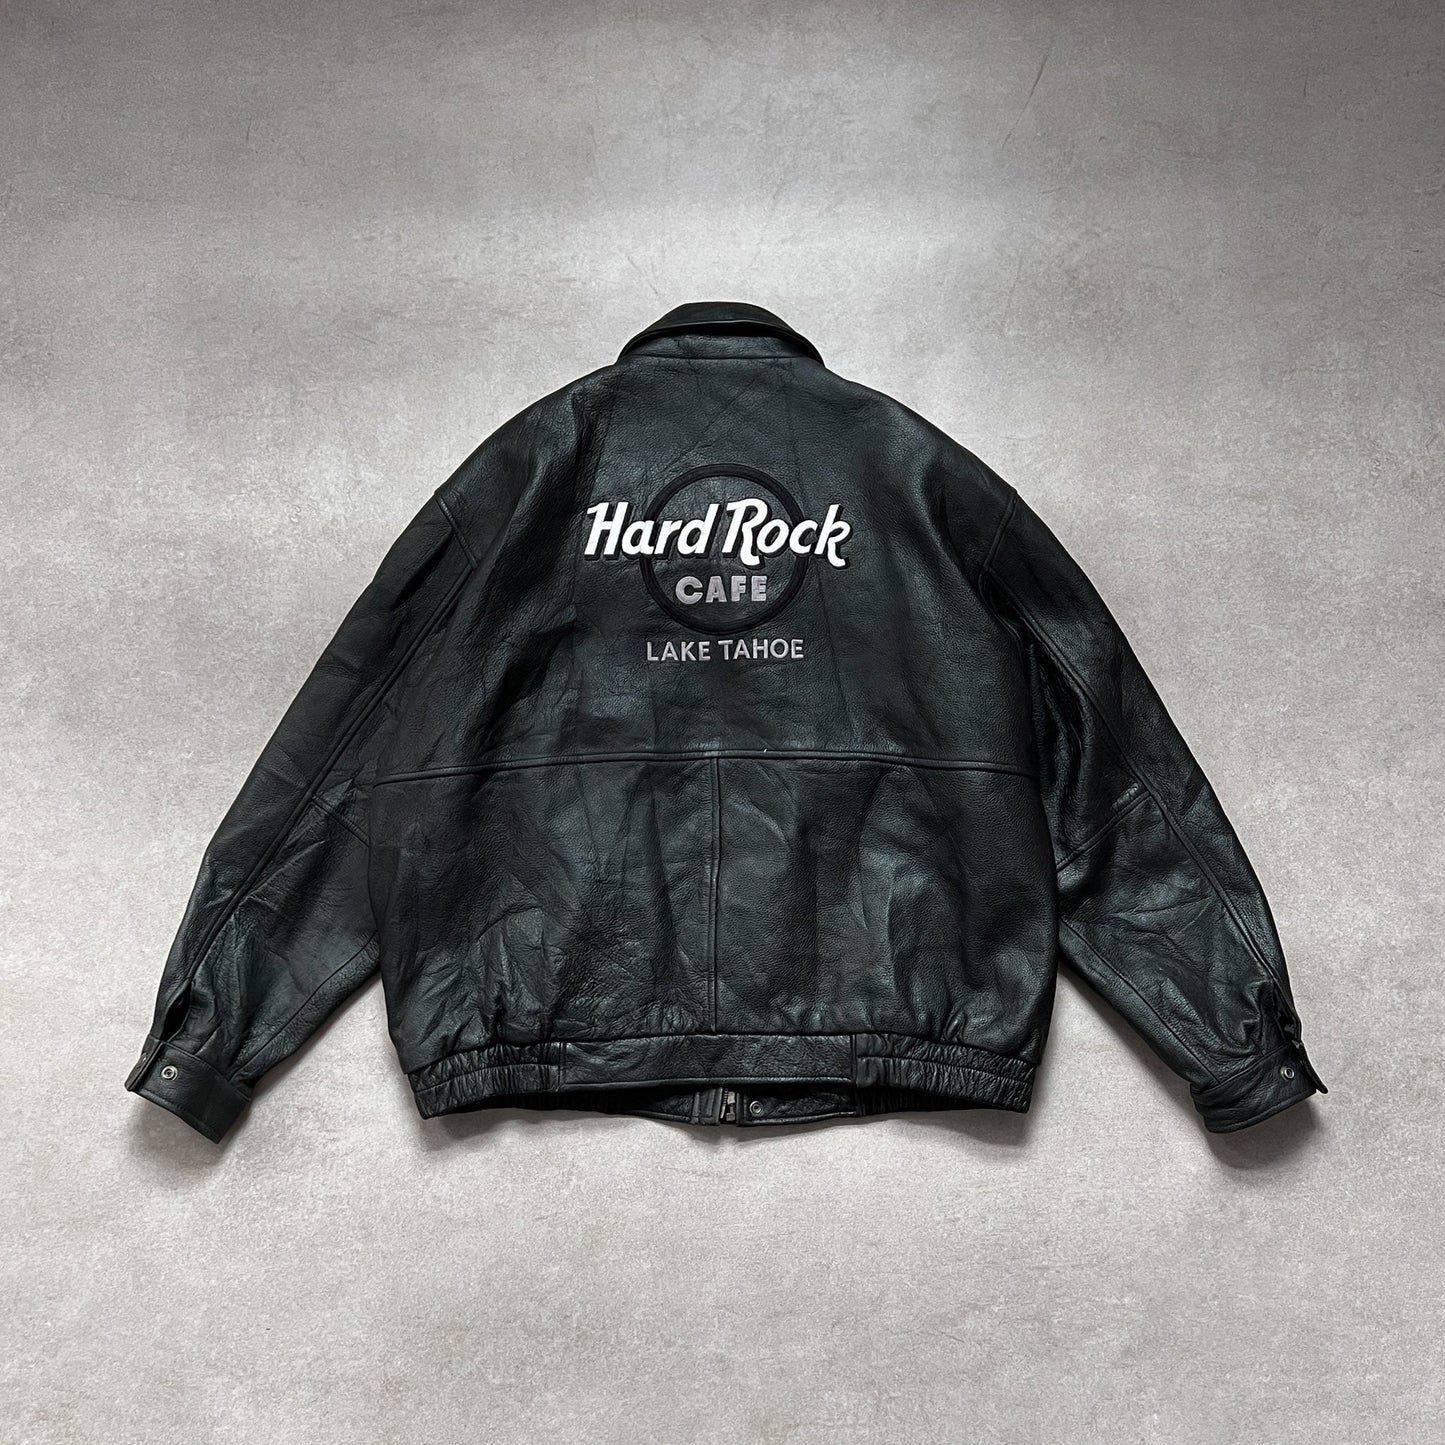 Vintage Hard Rock Cafe "Lake Tahoe" Black Leather Jacket - 2XL sullivansvintage